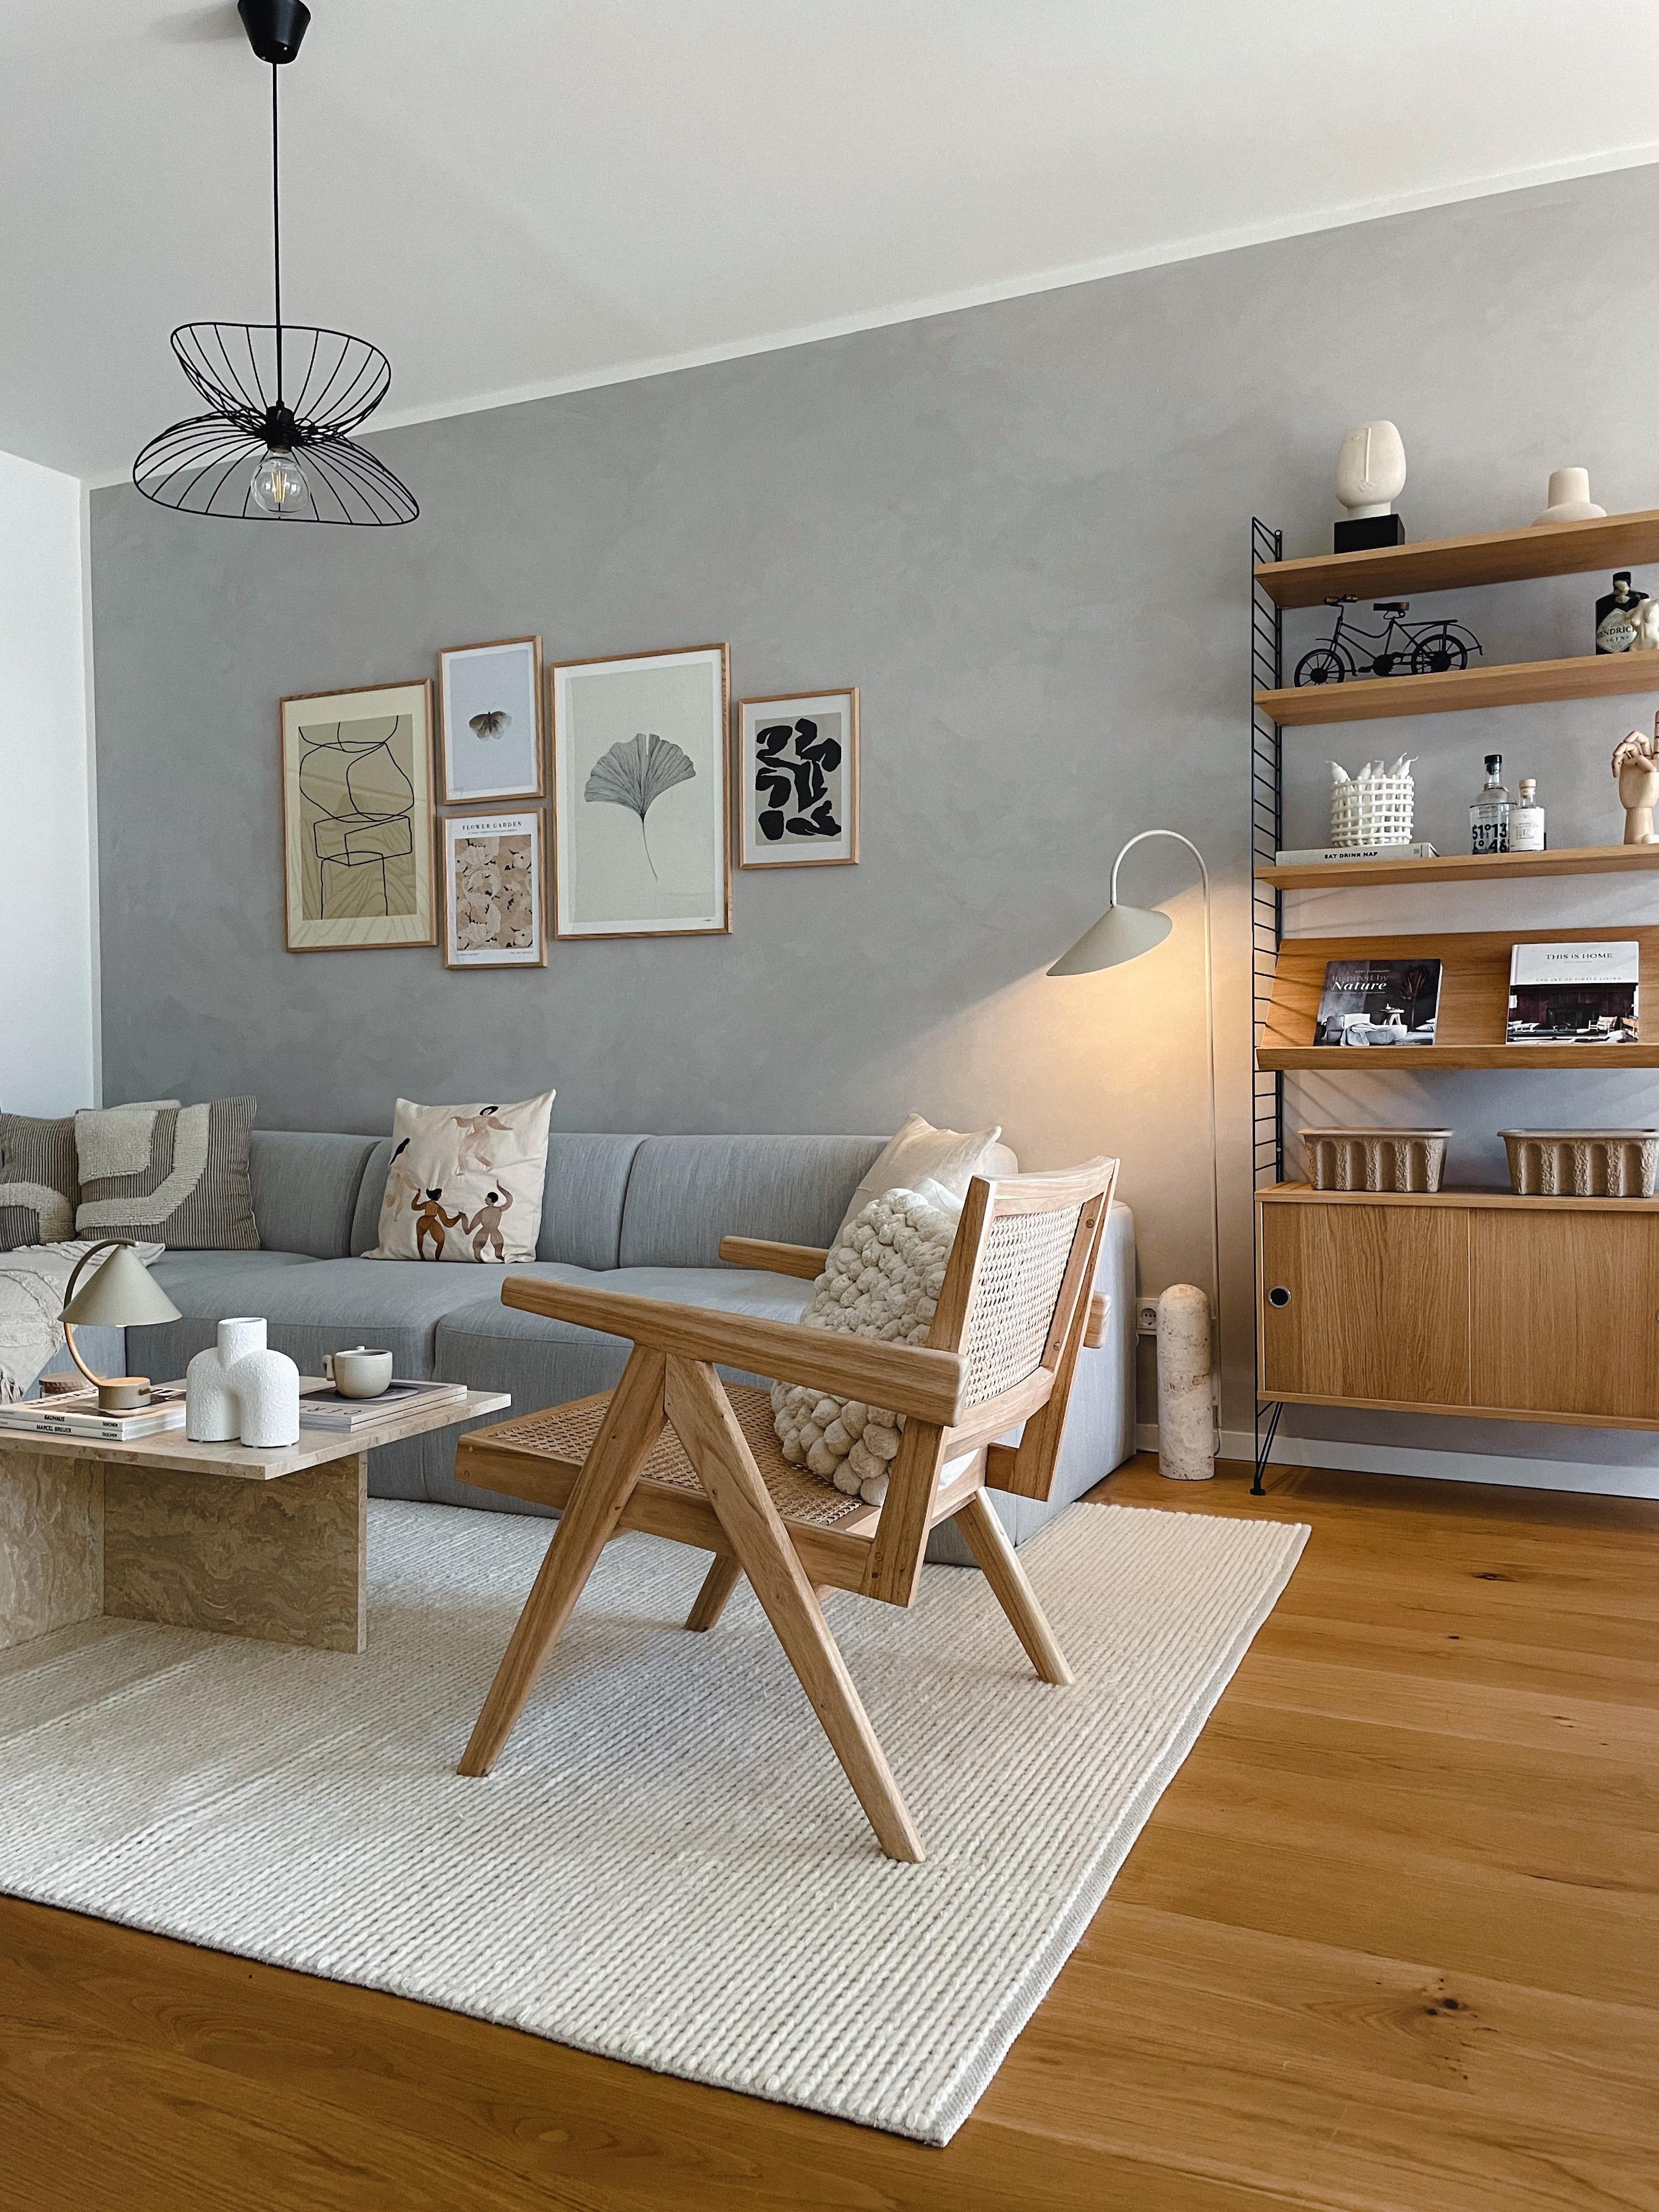 #Wohnzimmer #Wohnzimmerinspo #Wohnzimmerdeko #Deko #Interior #Couchtisch #Sofa #String #Loungesessel